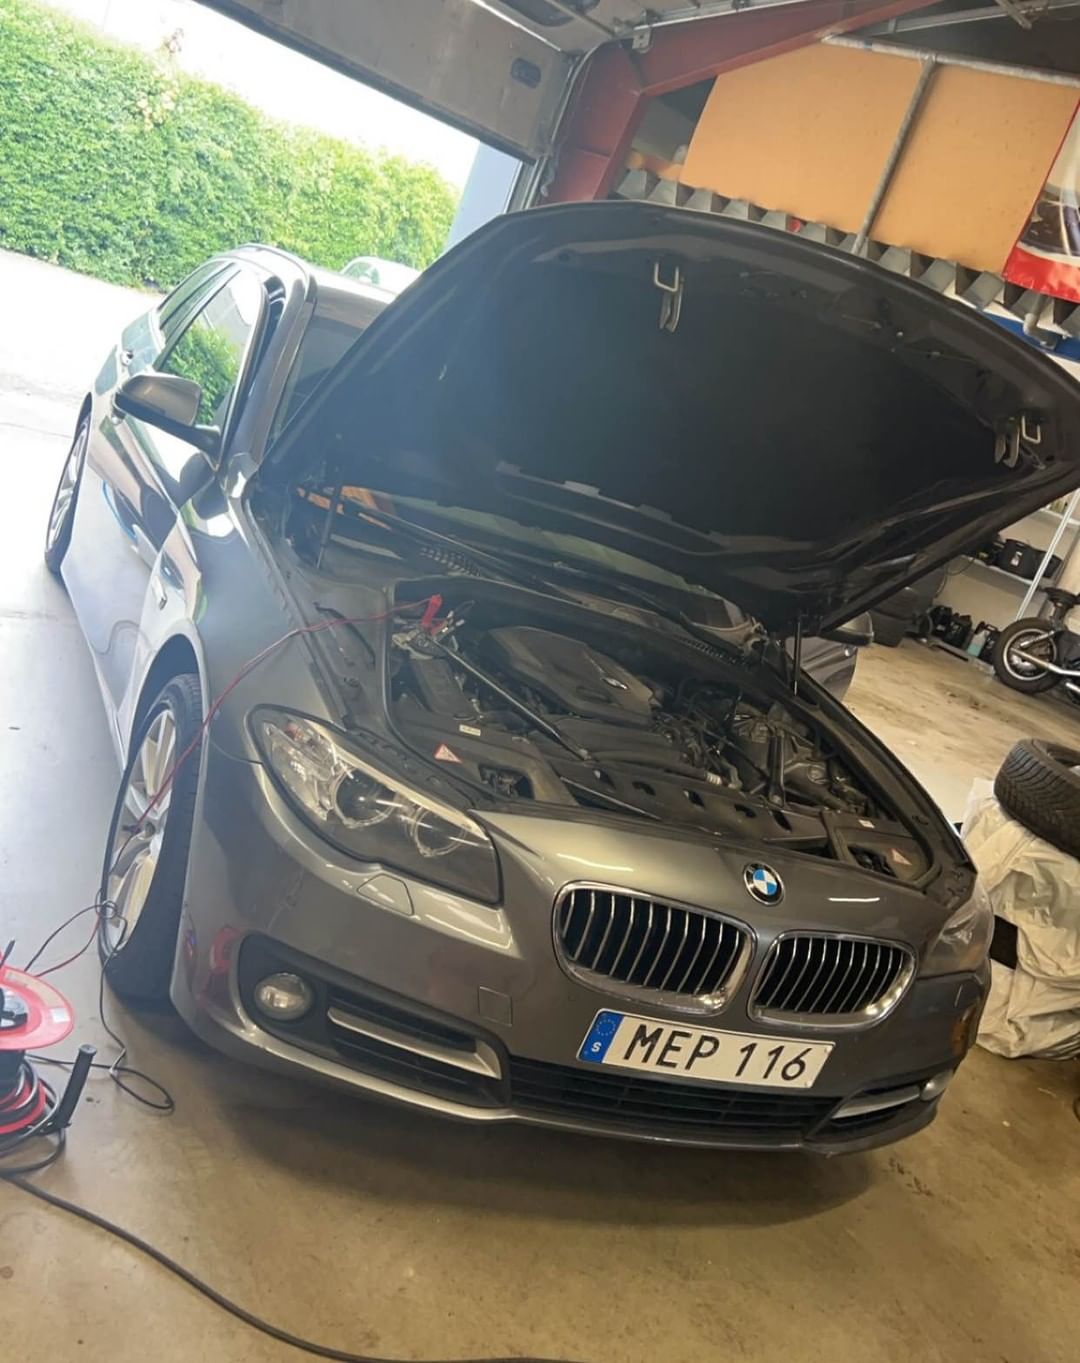 BMW 520d efter tuning, viser forbedret hestekræfter og drejningsmoment